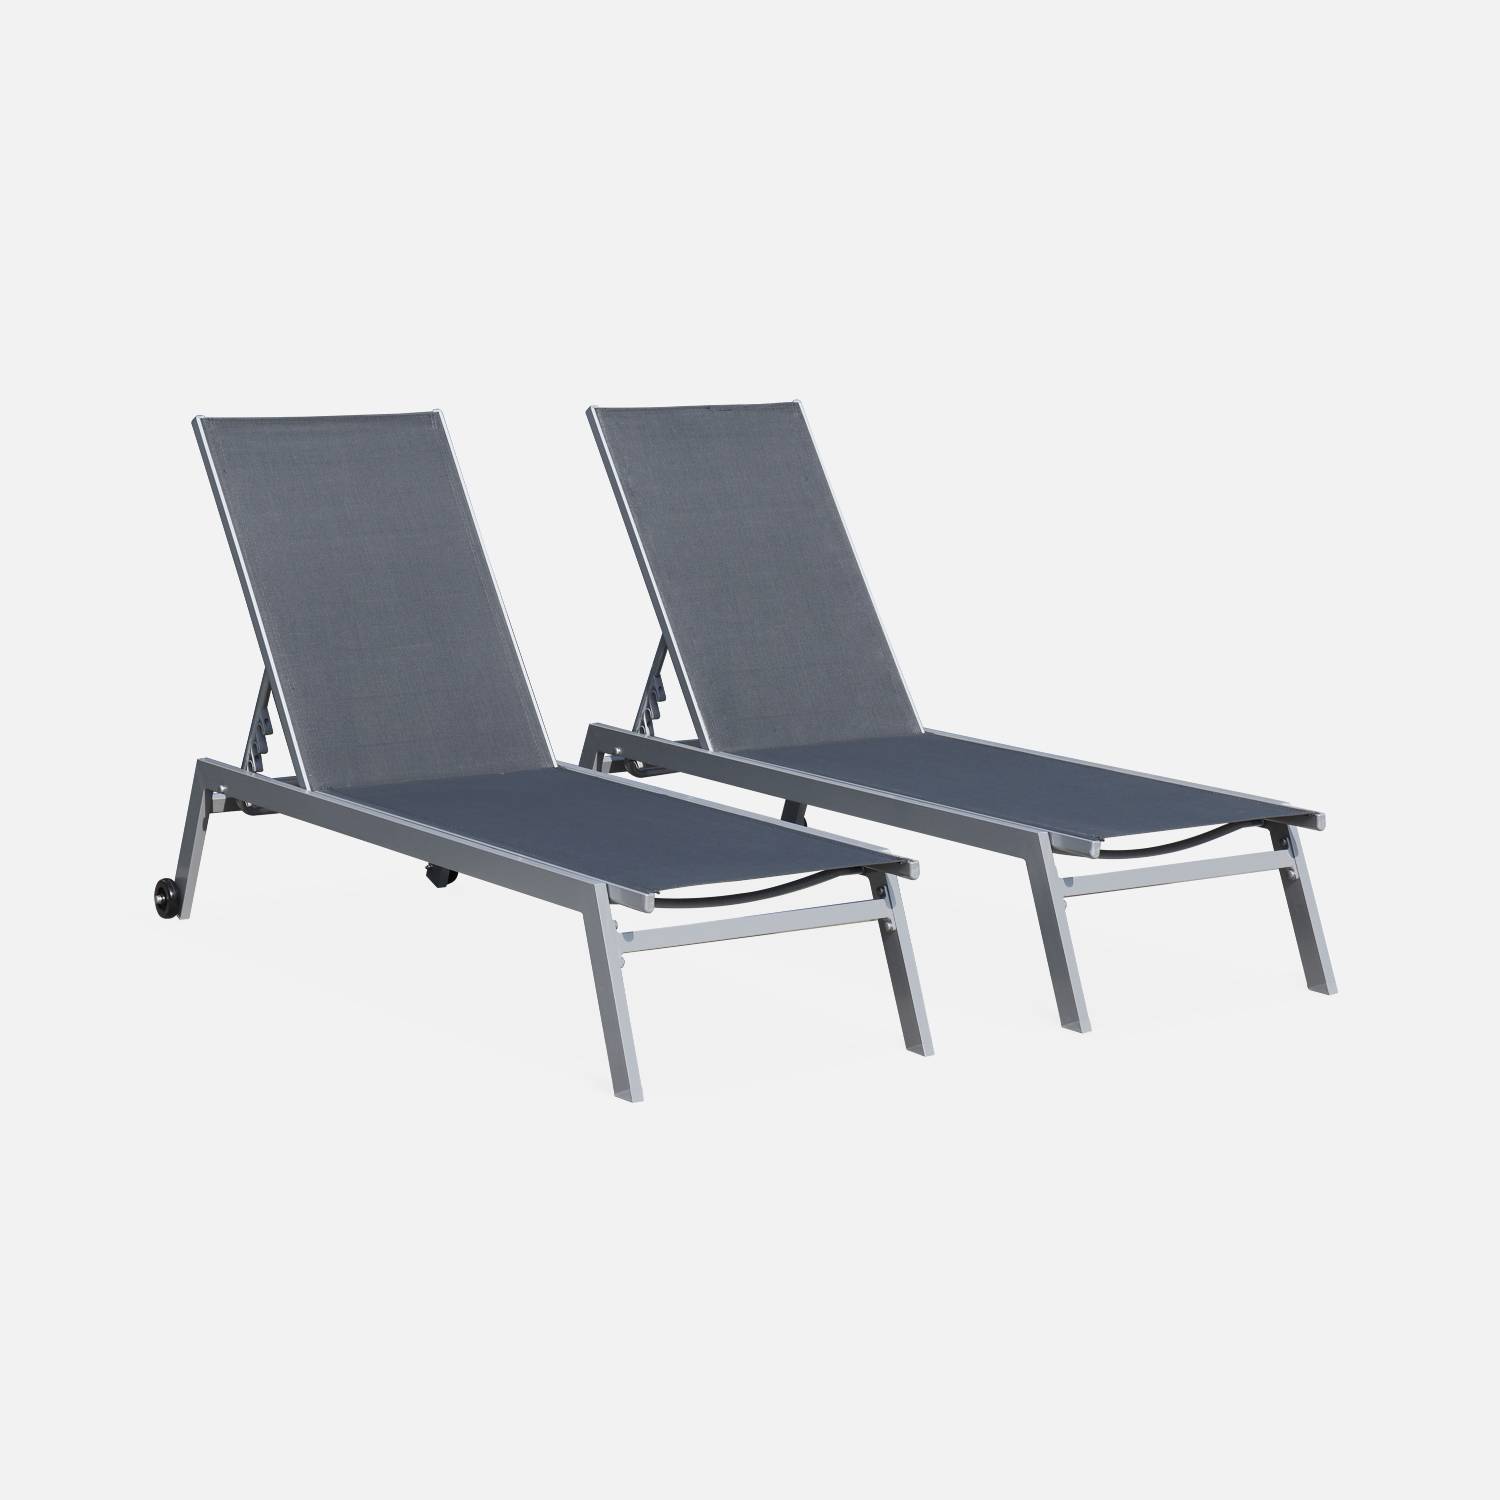 Set mit 2 ELSA Sonnenliegen aus grauem Aluminium und dunkelgrauem Textilene, Liegestühle mit mehreren Positionen und Rädern Photo2